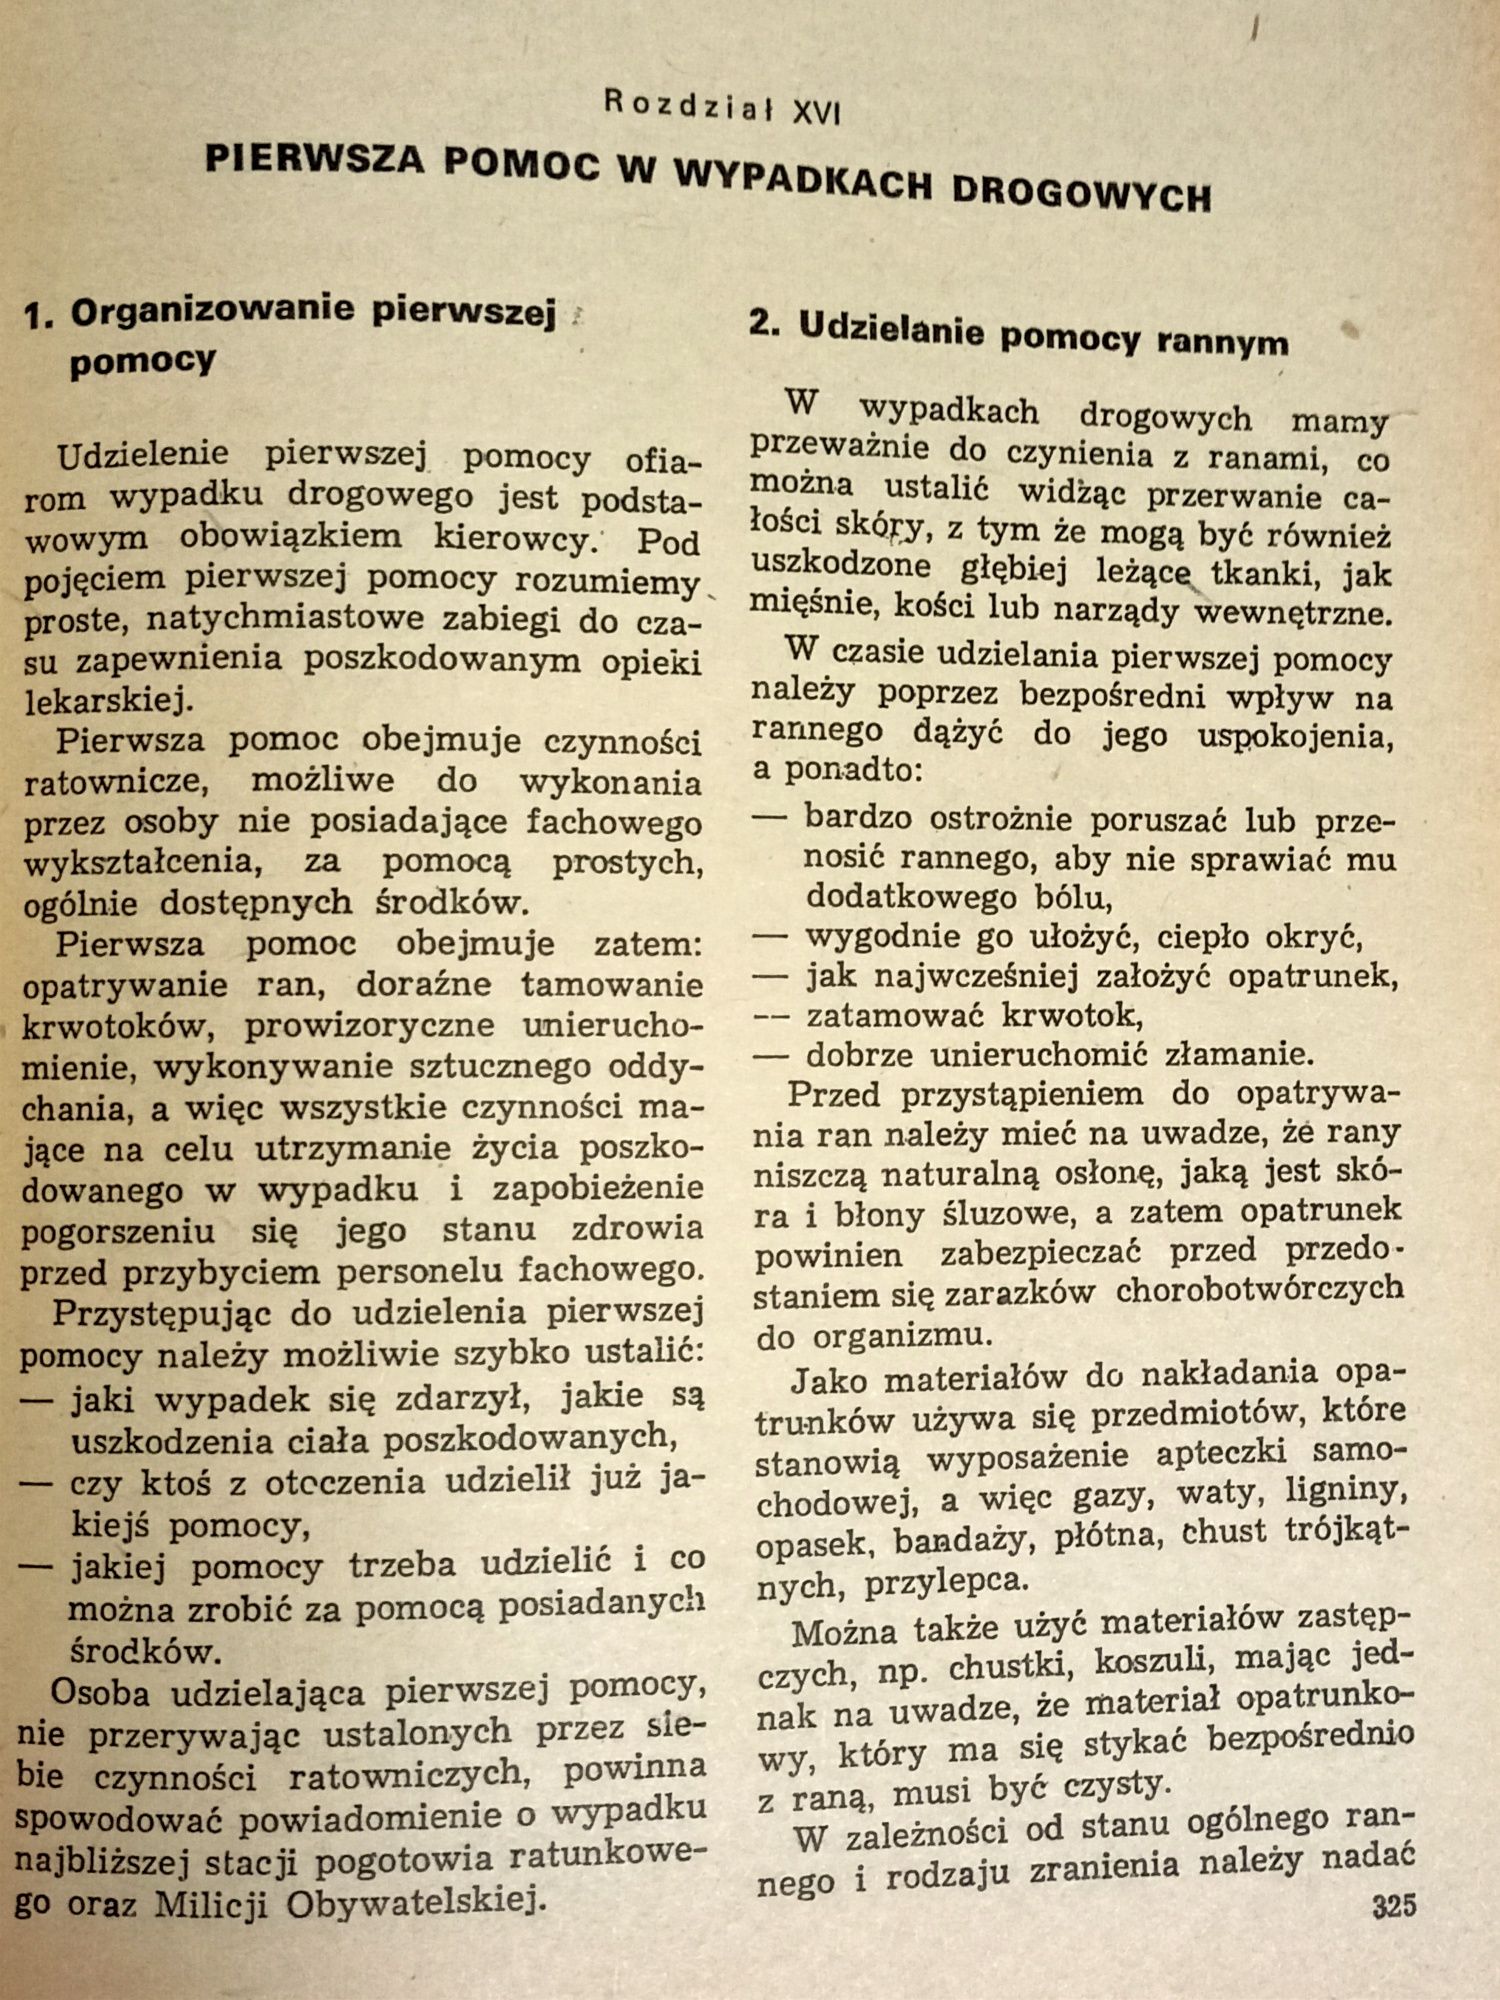 Podręcznik Kierowców Zawodowych - Kategoria B i C - 1977